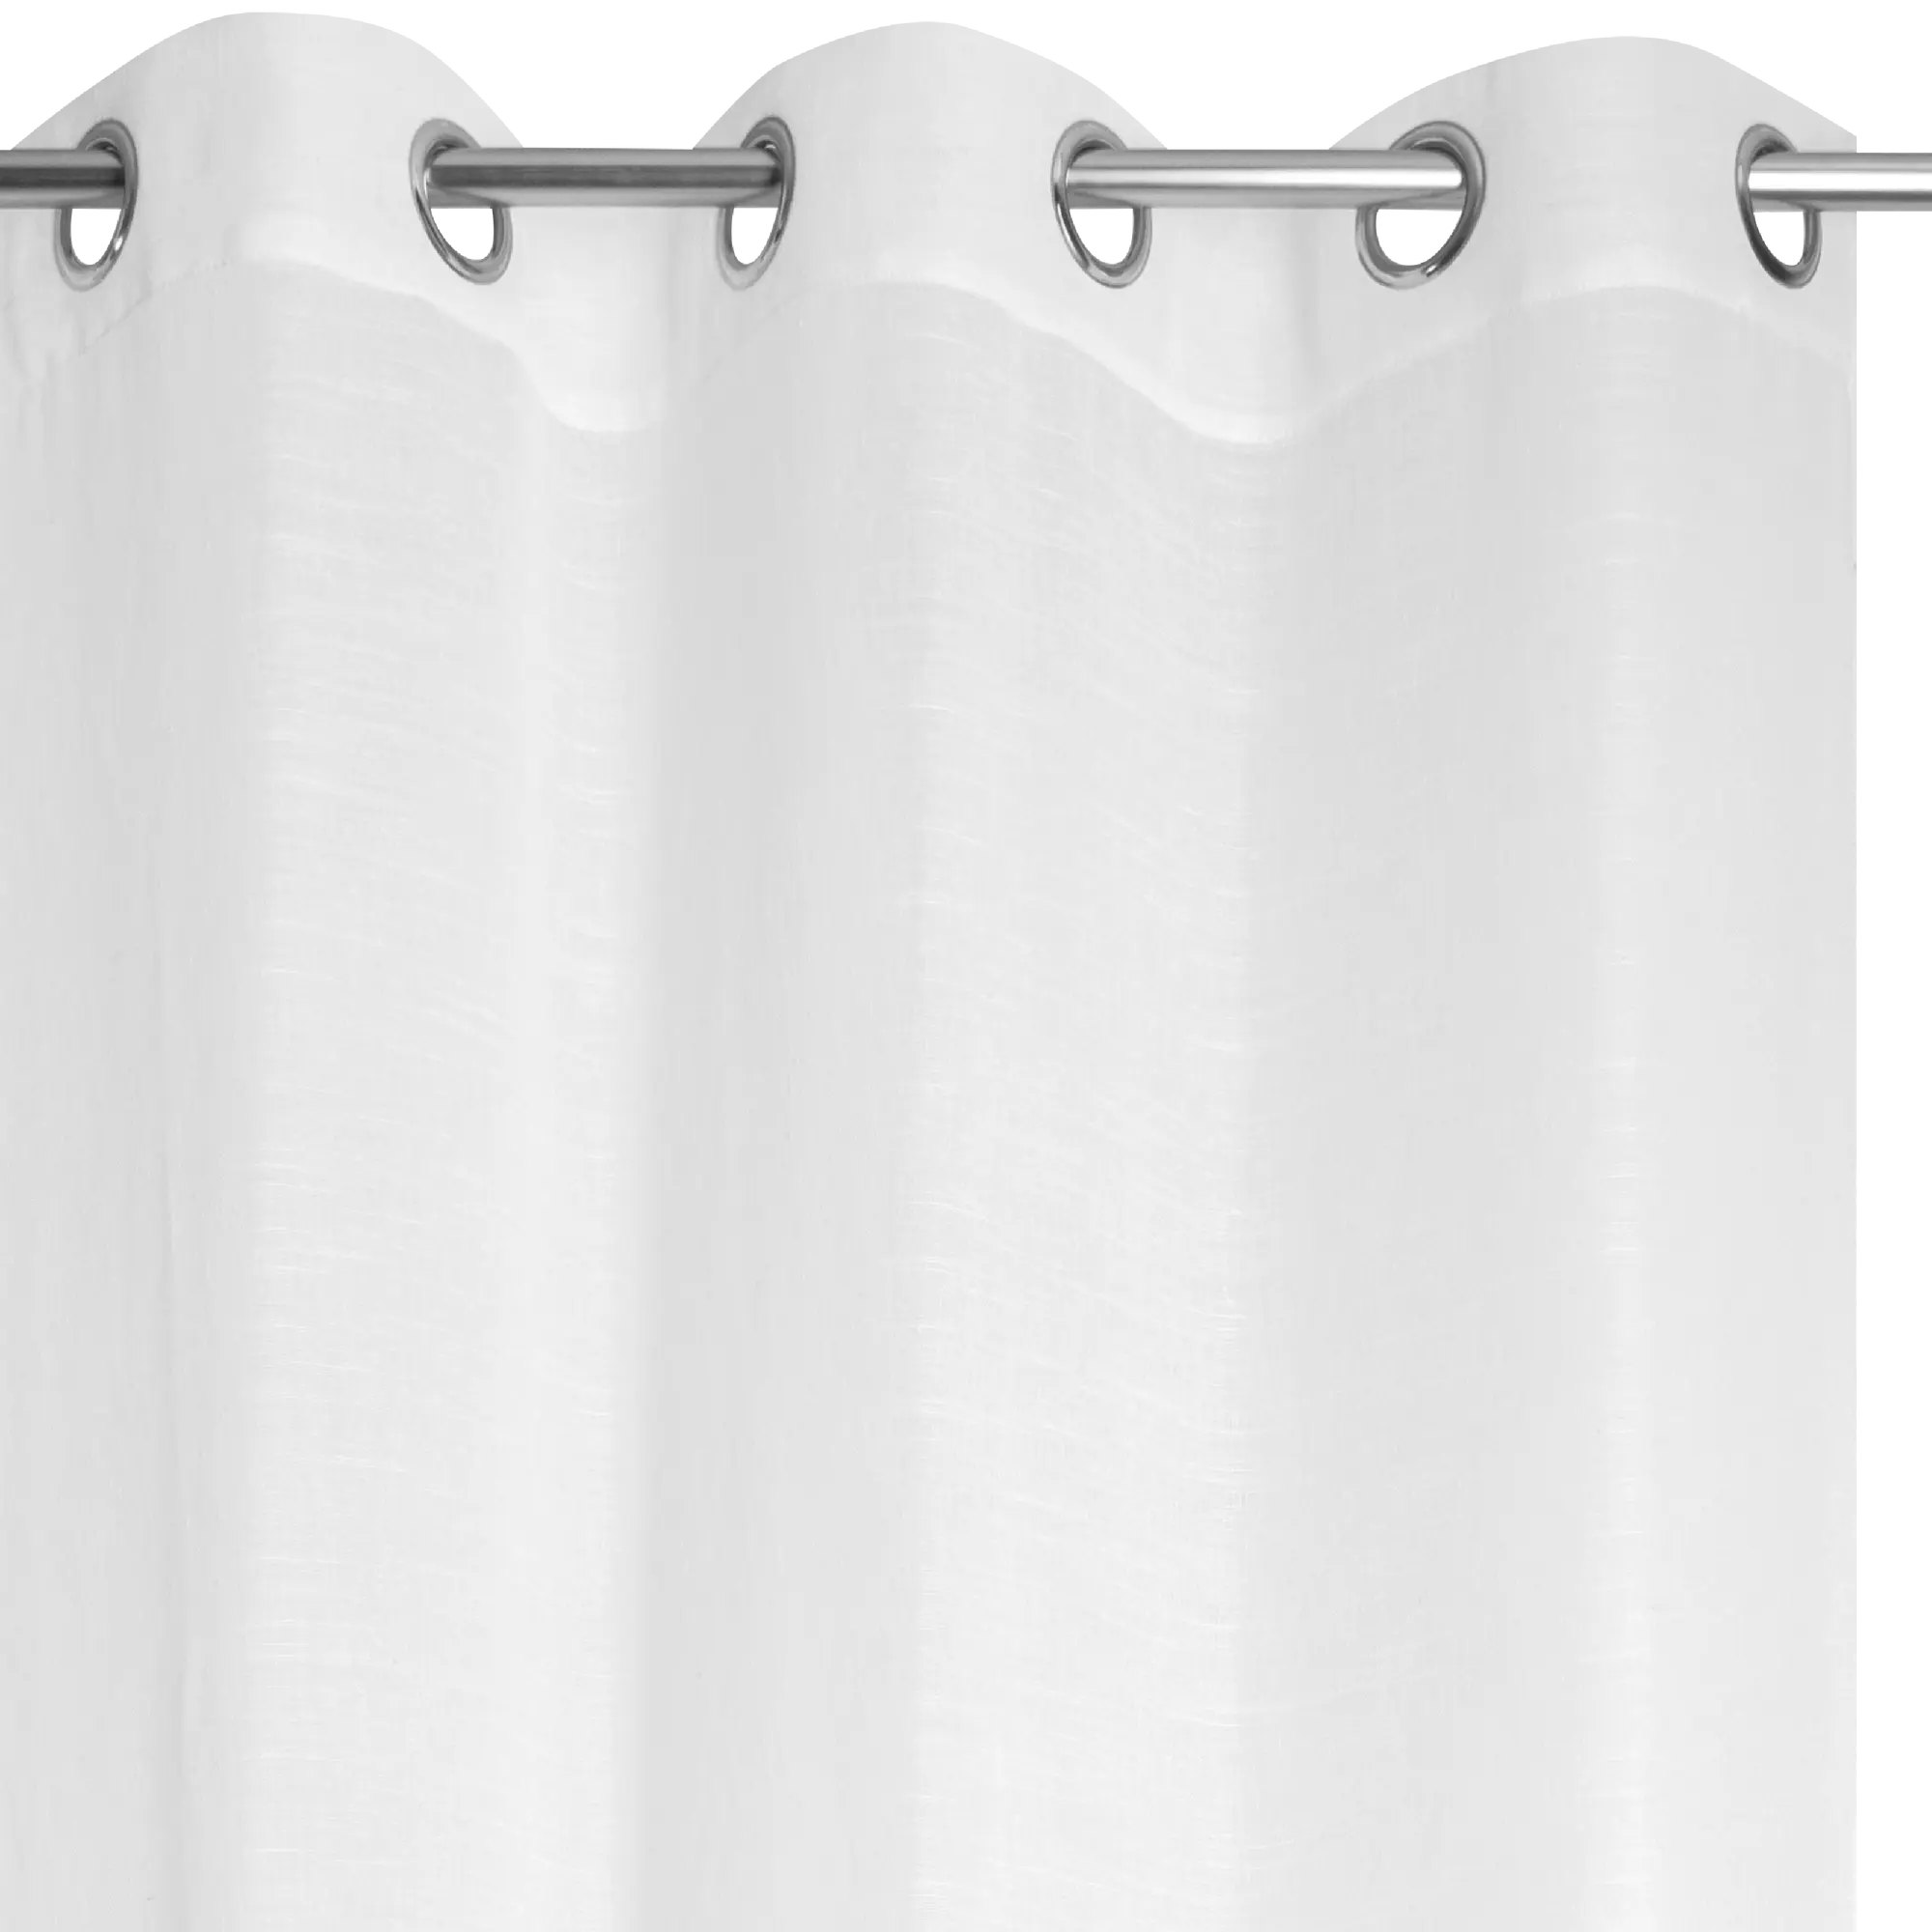 Visillo ollaos Cambria INSPIRE liso blanco de 200x280cm